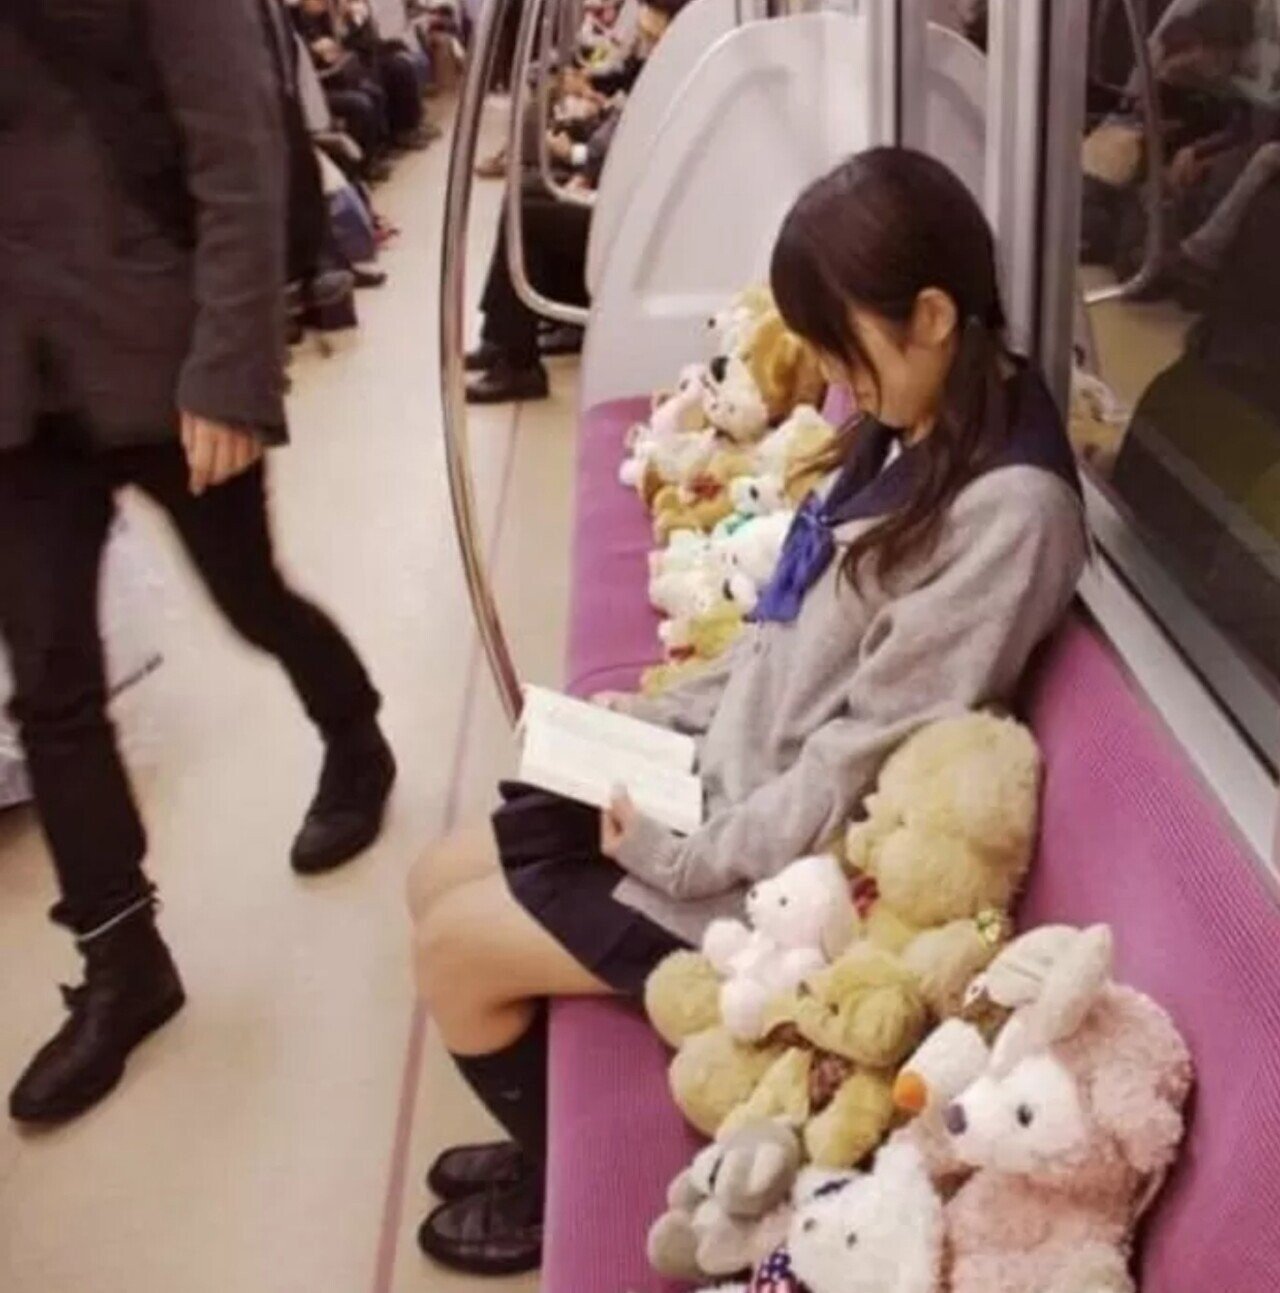 ㅇㅎ)약한자는 살아남을 수 없는 일본 지하철 빌런 모음